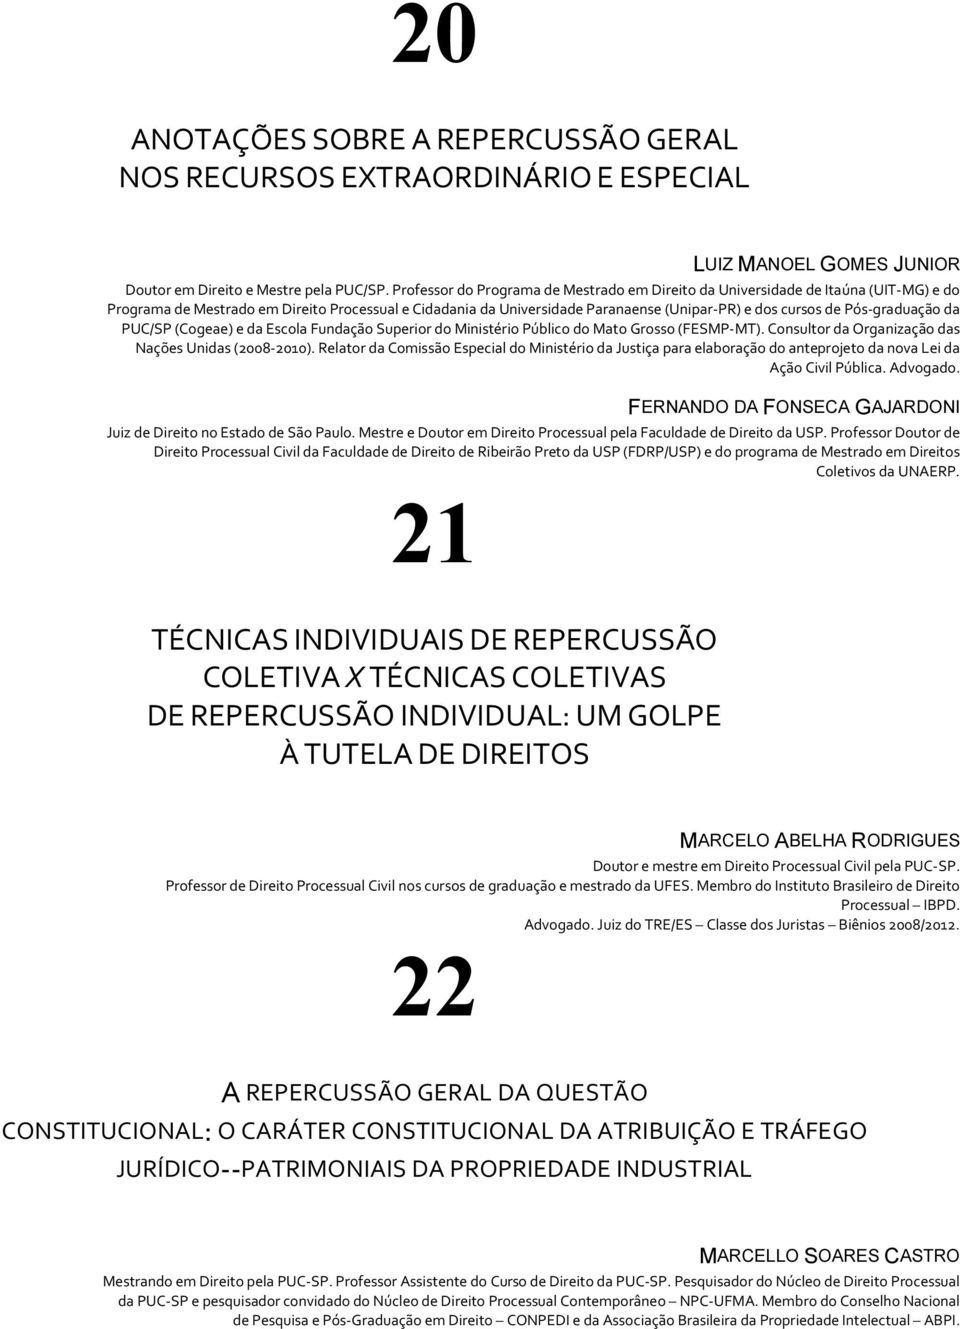 Pós-graduação da PUC/SP (Cogeae) e da Escola Fundação Superior do Ministério Público do Mato Grosso (FESMP-MT). Consultor da Organização das Nações Unidas (2008-2010).